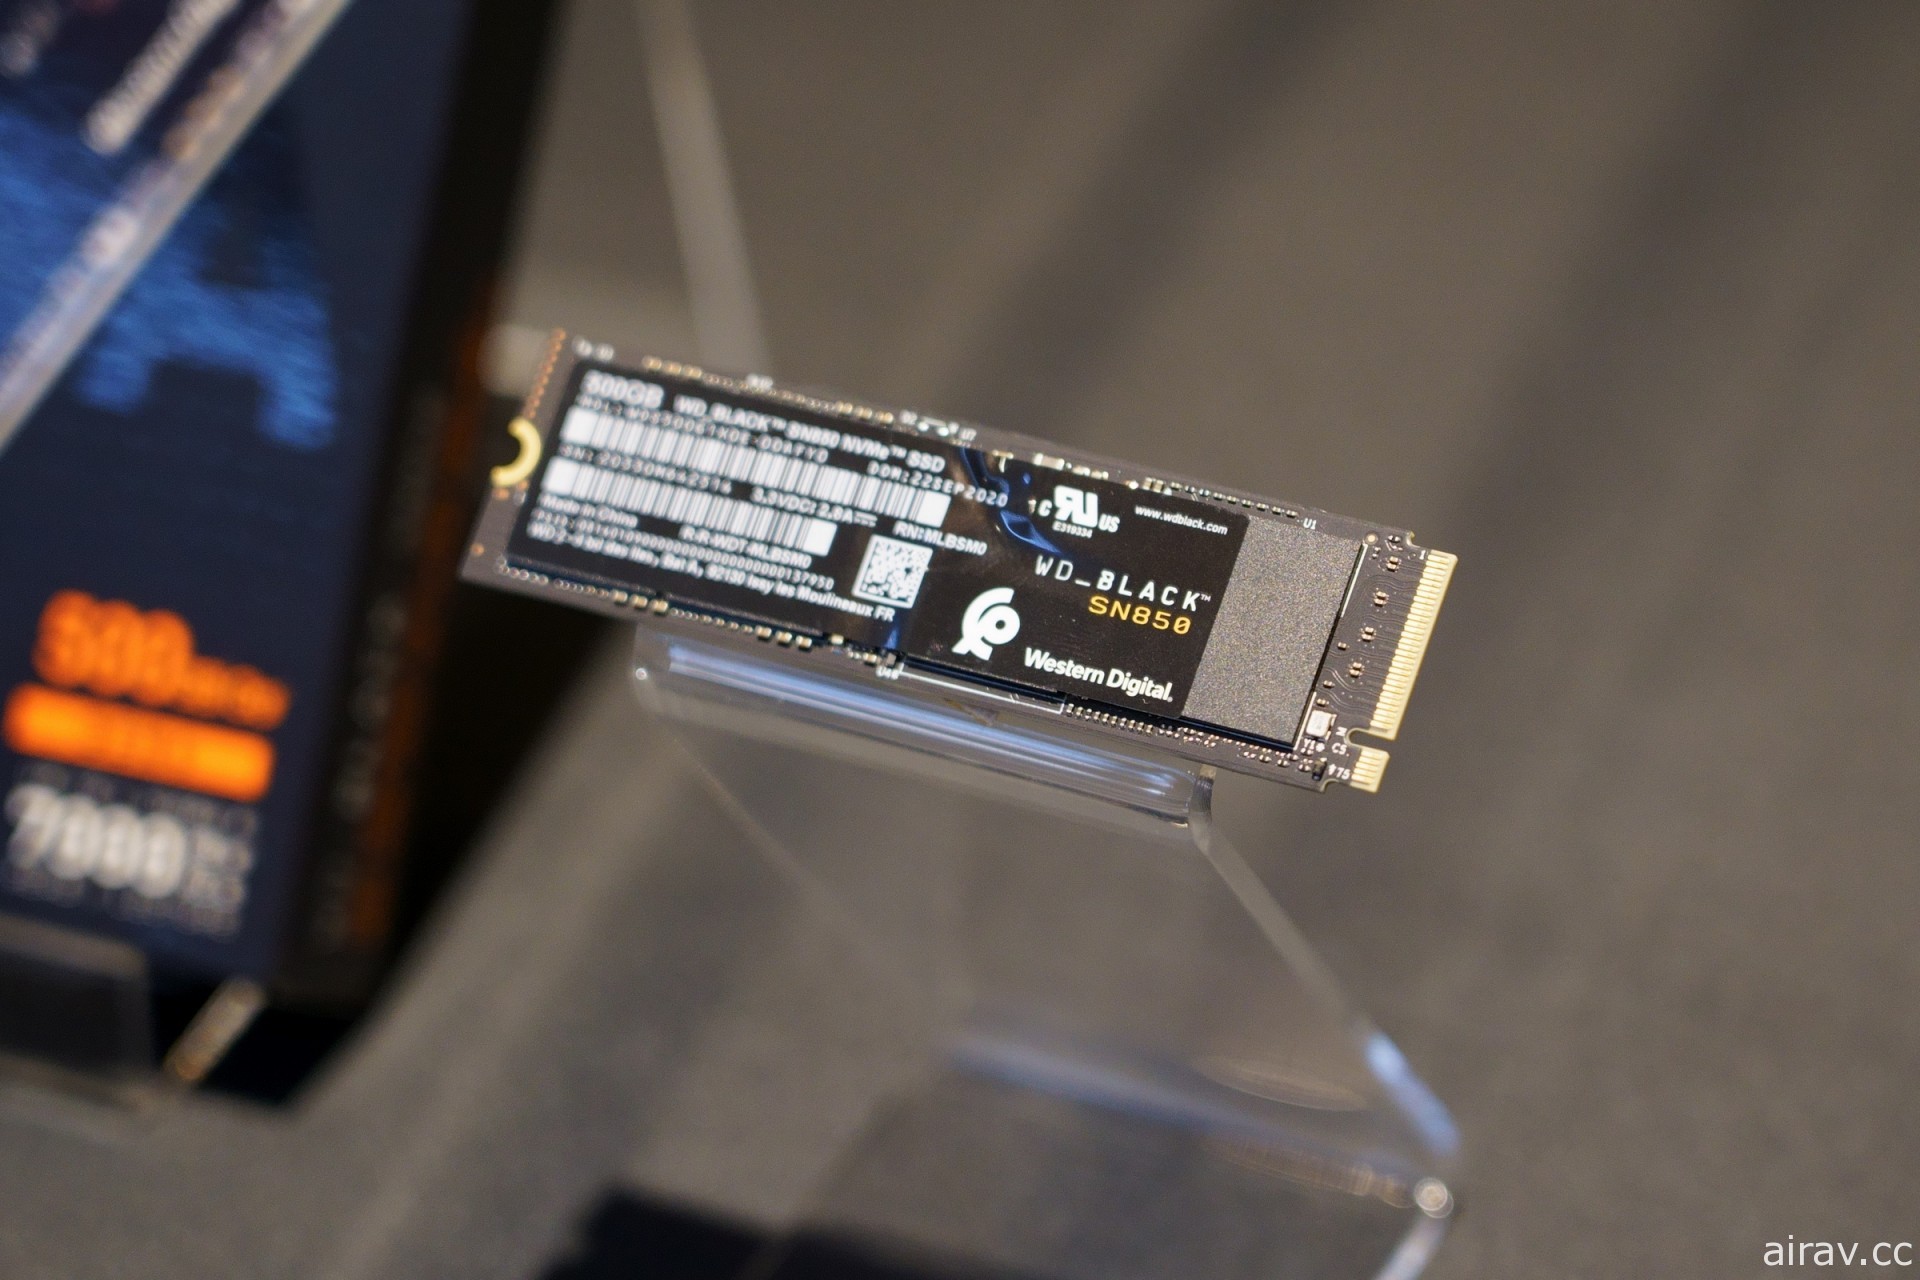 WD 推出高效能 NVMe SSD“SN850” 读取效能达每秒 7GB 符合 PS5 扩充要求